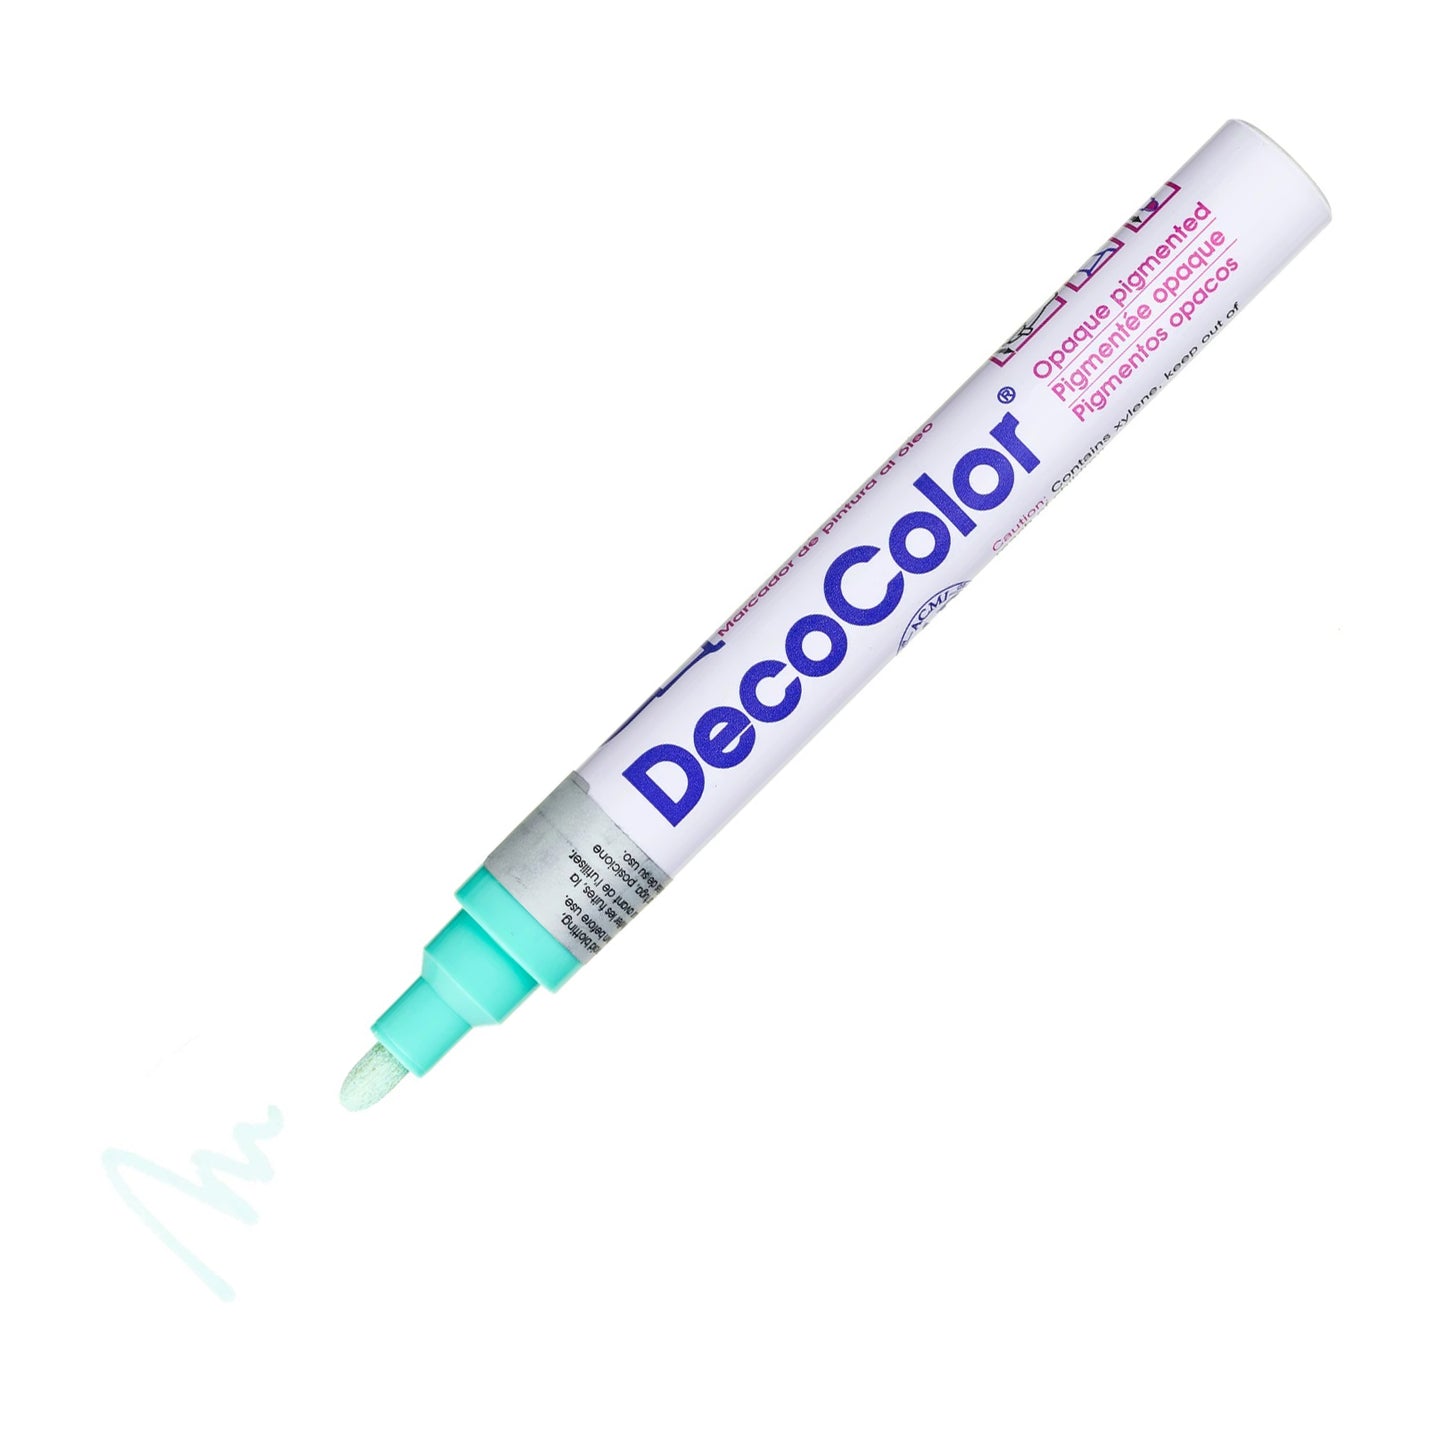 Decocolor Paint Marker, 6mm Broad Bullet Tip